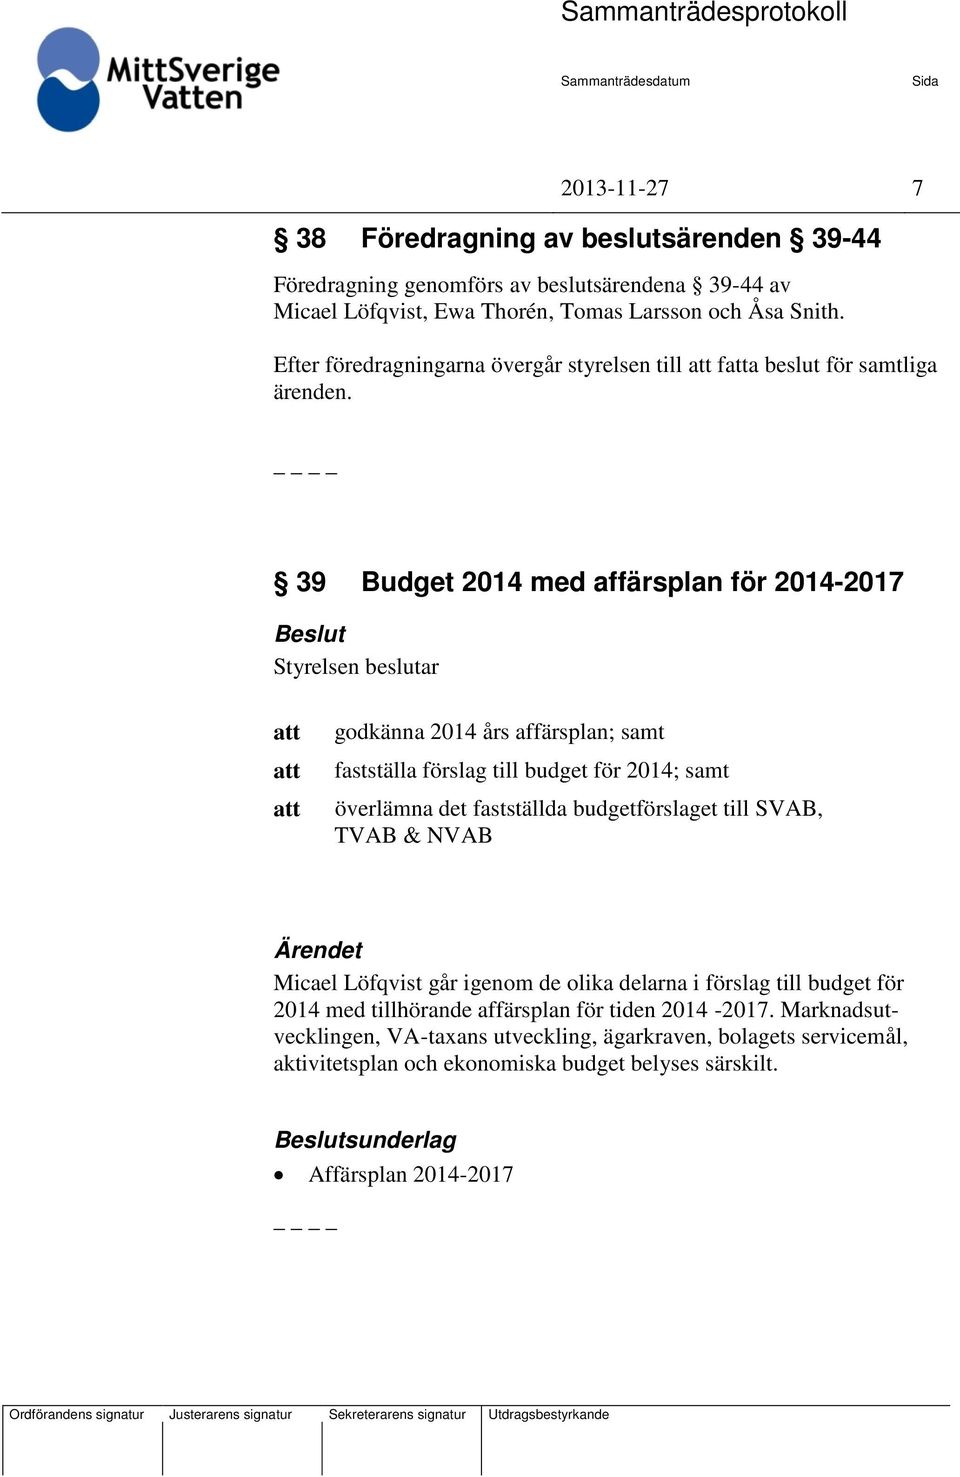 39 Budget 2014 med affärsplan för 2014-2017 Beslut godkänna 2014 års affärsplan; samt fastställa förslag till budget för 2014; samt överlämna det fastställda budgetförslaget till